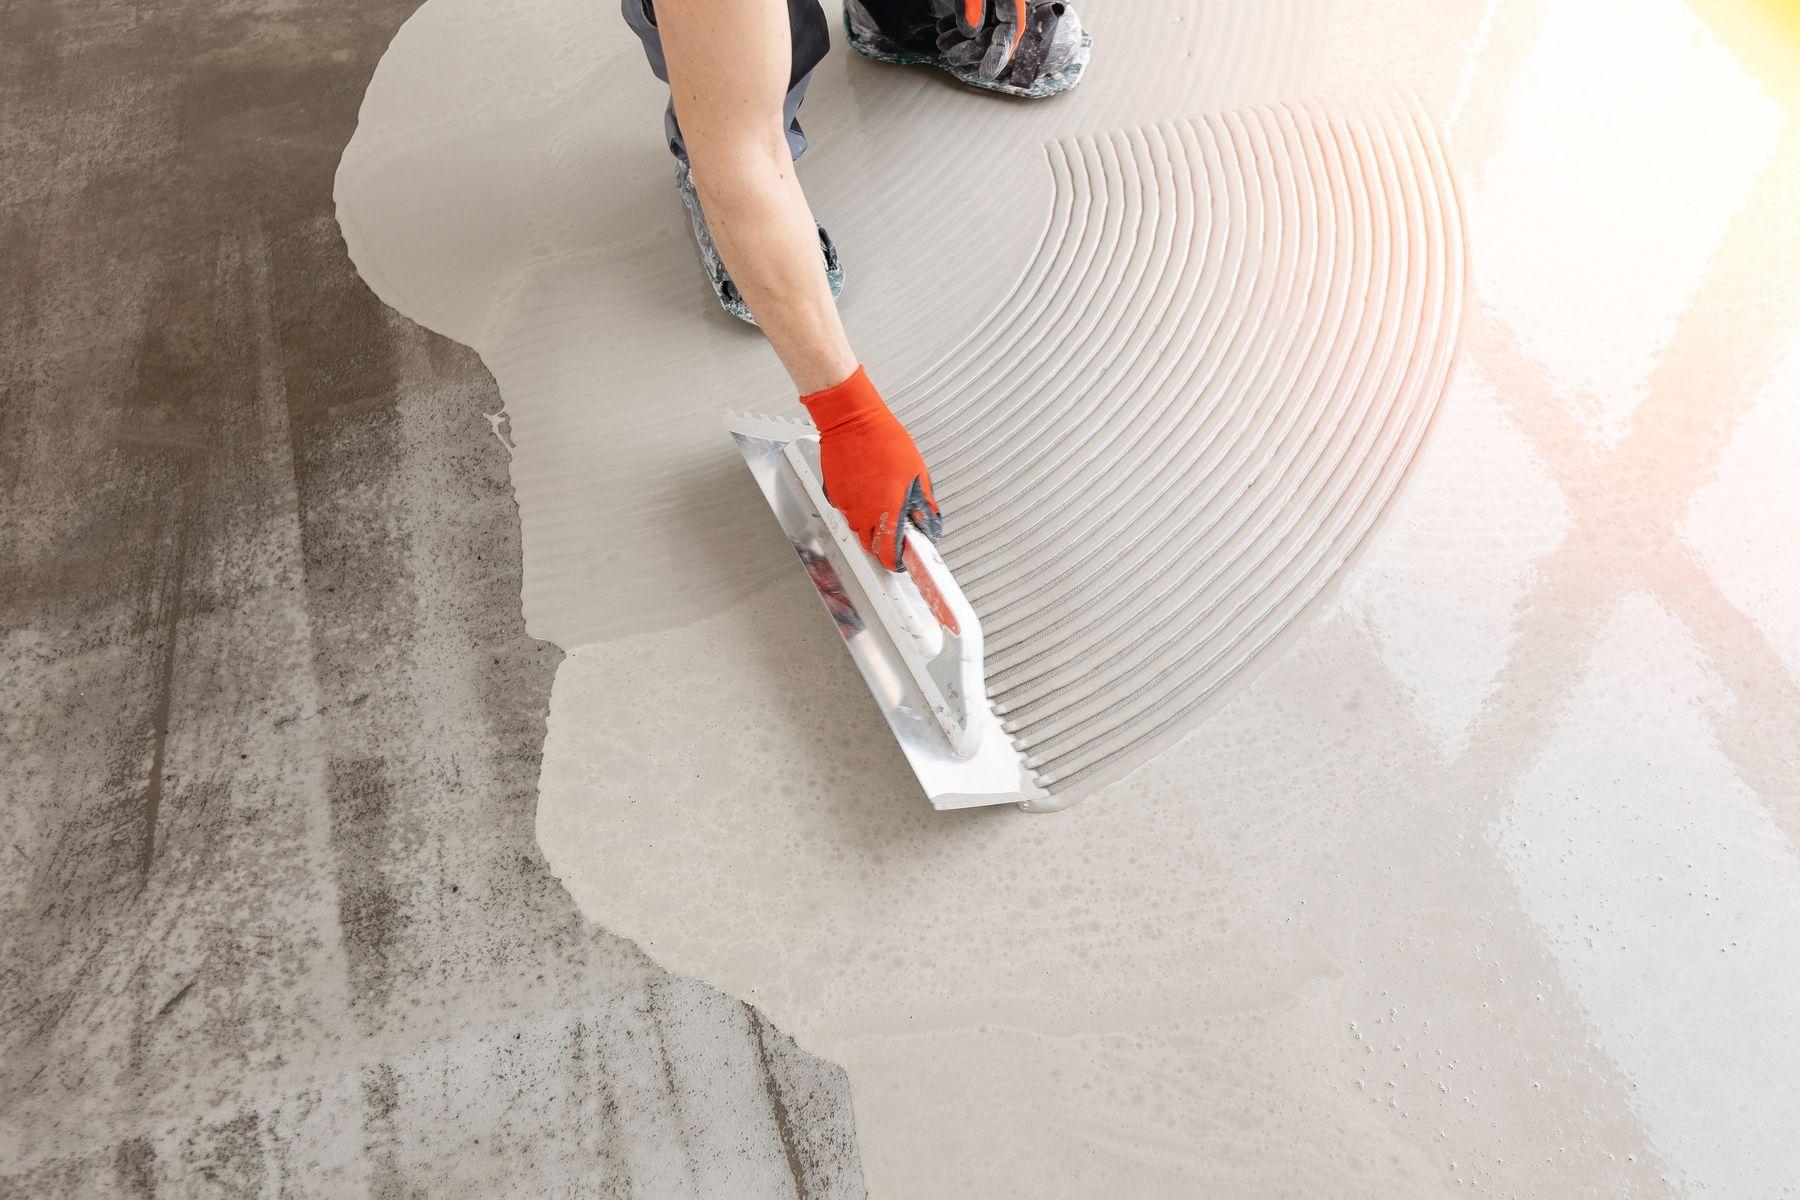 Microcement i ljusgrå/beige färgton appliceras på golv med en spackelliknande skrapa.